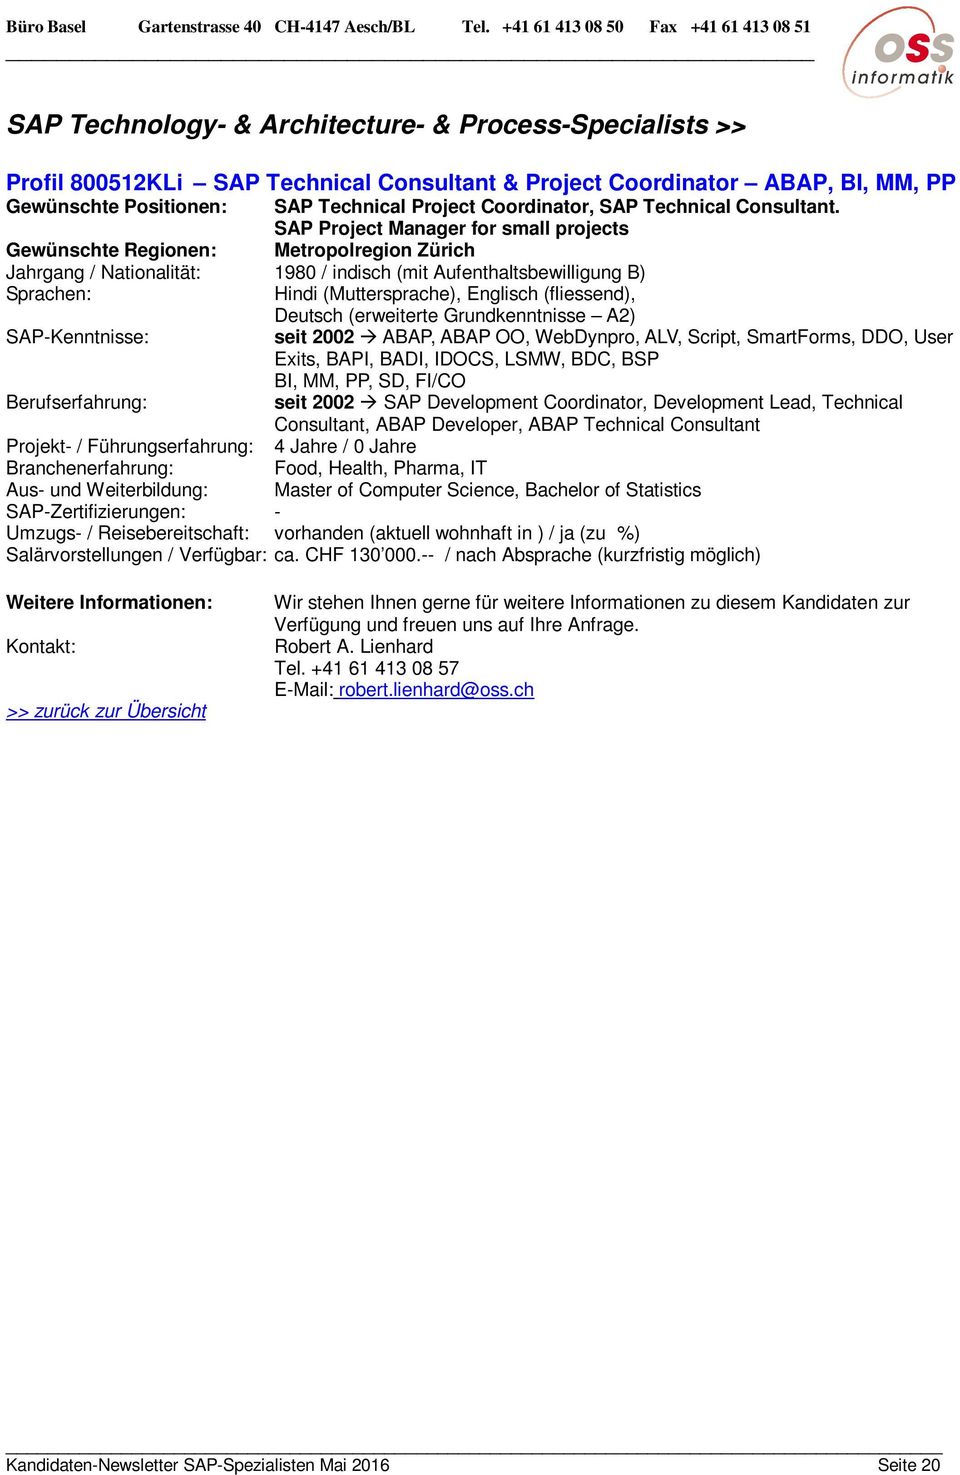 SAP Project Manager for small projects Gewünschte Regionen: Metropolregion Zürich Jahrgang / Nationalität: 1980 / indisch (mit Aufenthaltsbewilligung B) Hindi (Muttersprache), Englisch (fliessend),